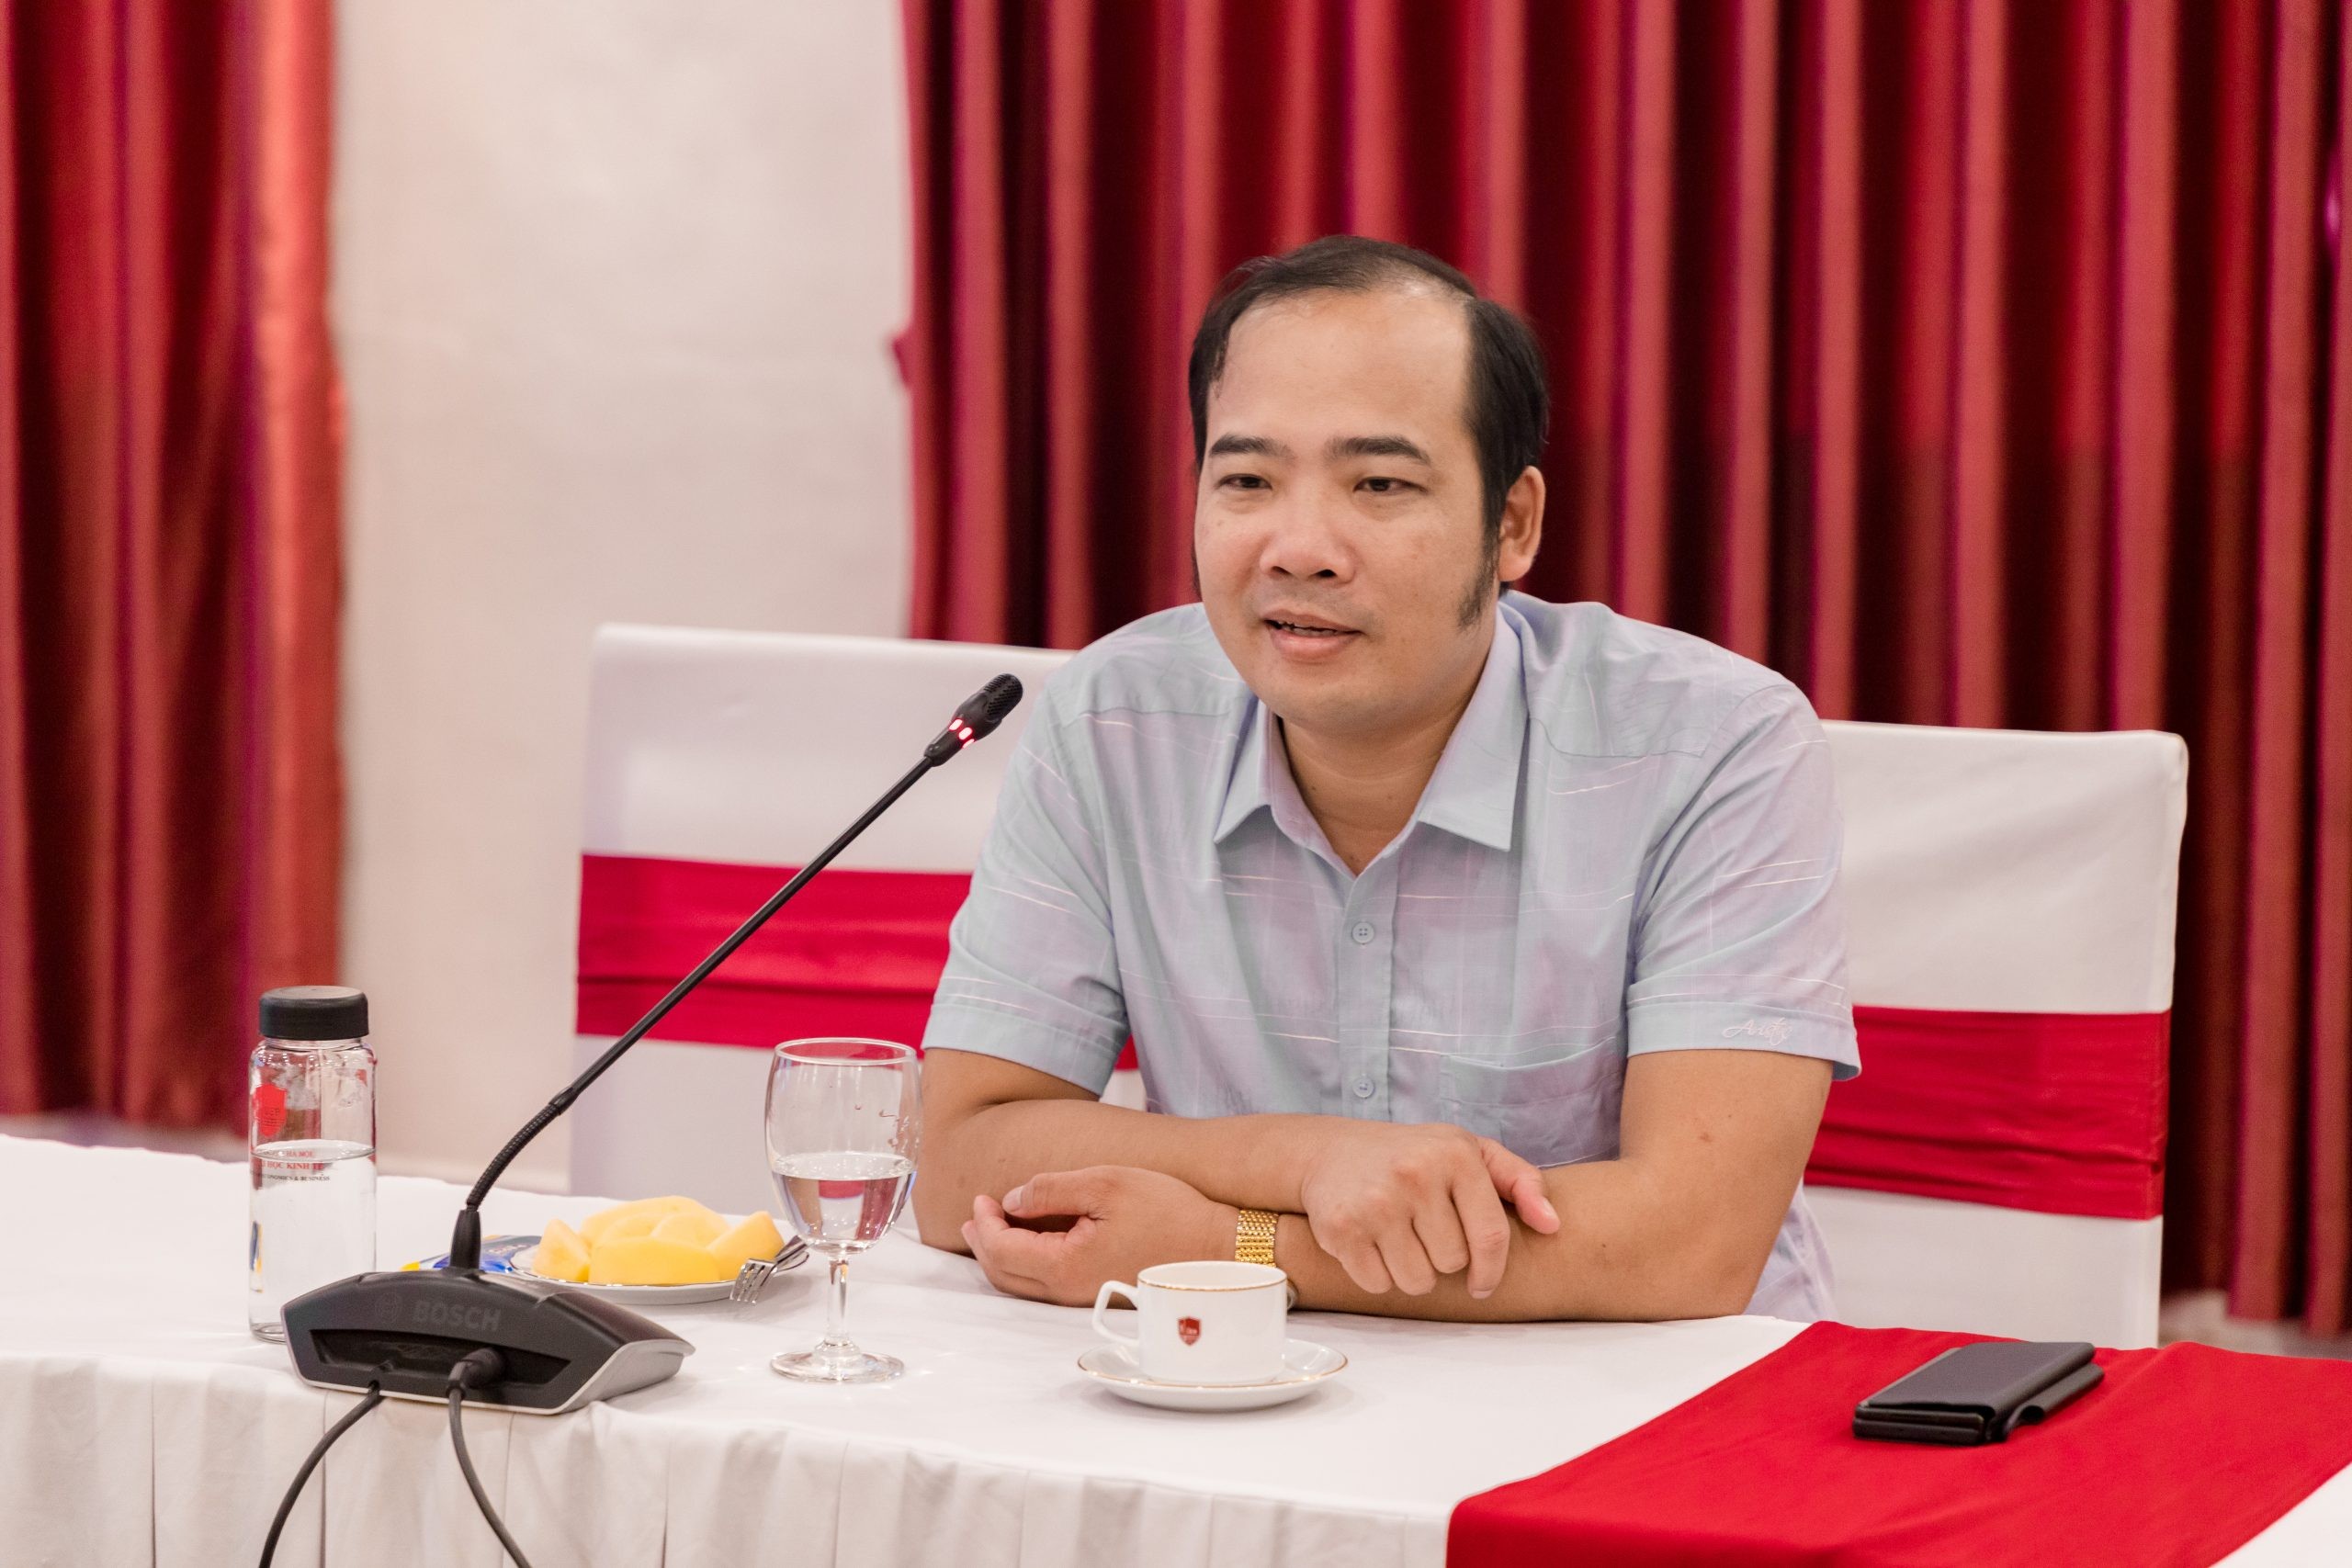 
Ông Nguyễn Anh Quê, Ủy viên Ban chấp hành Hiệp hội Bất động sản Việt Nam, Chủ tịch Tập đoàn G6
